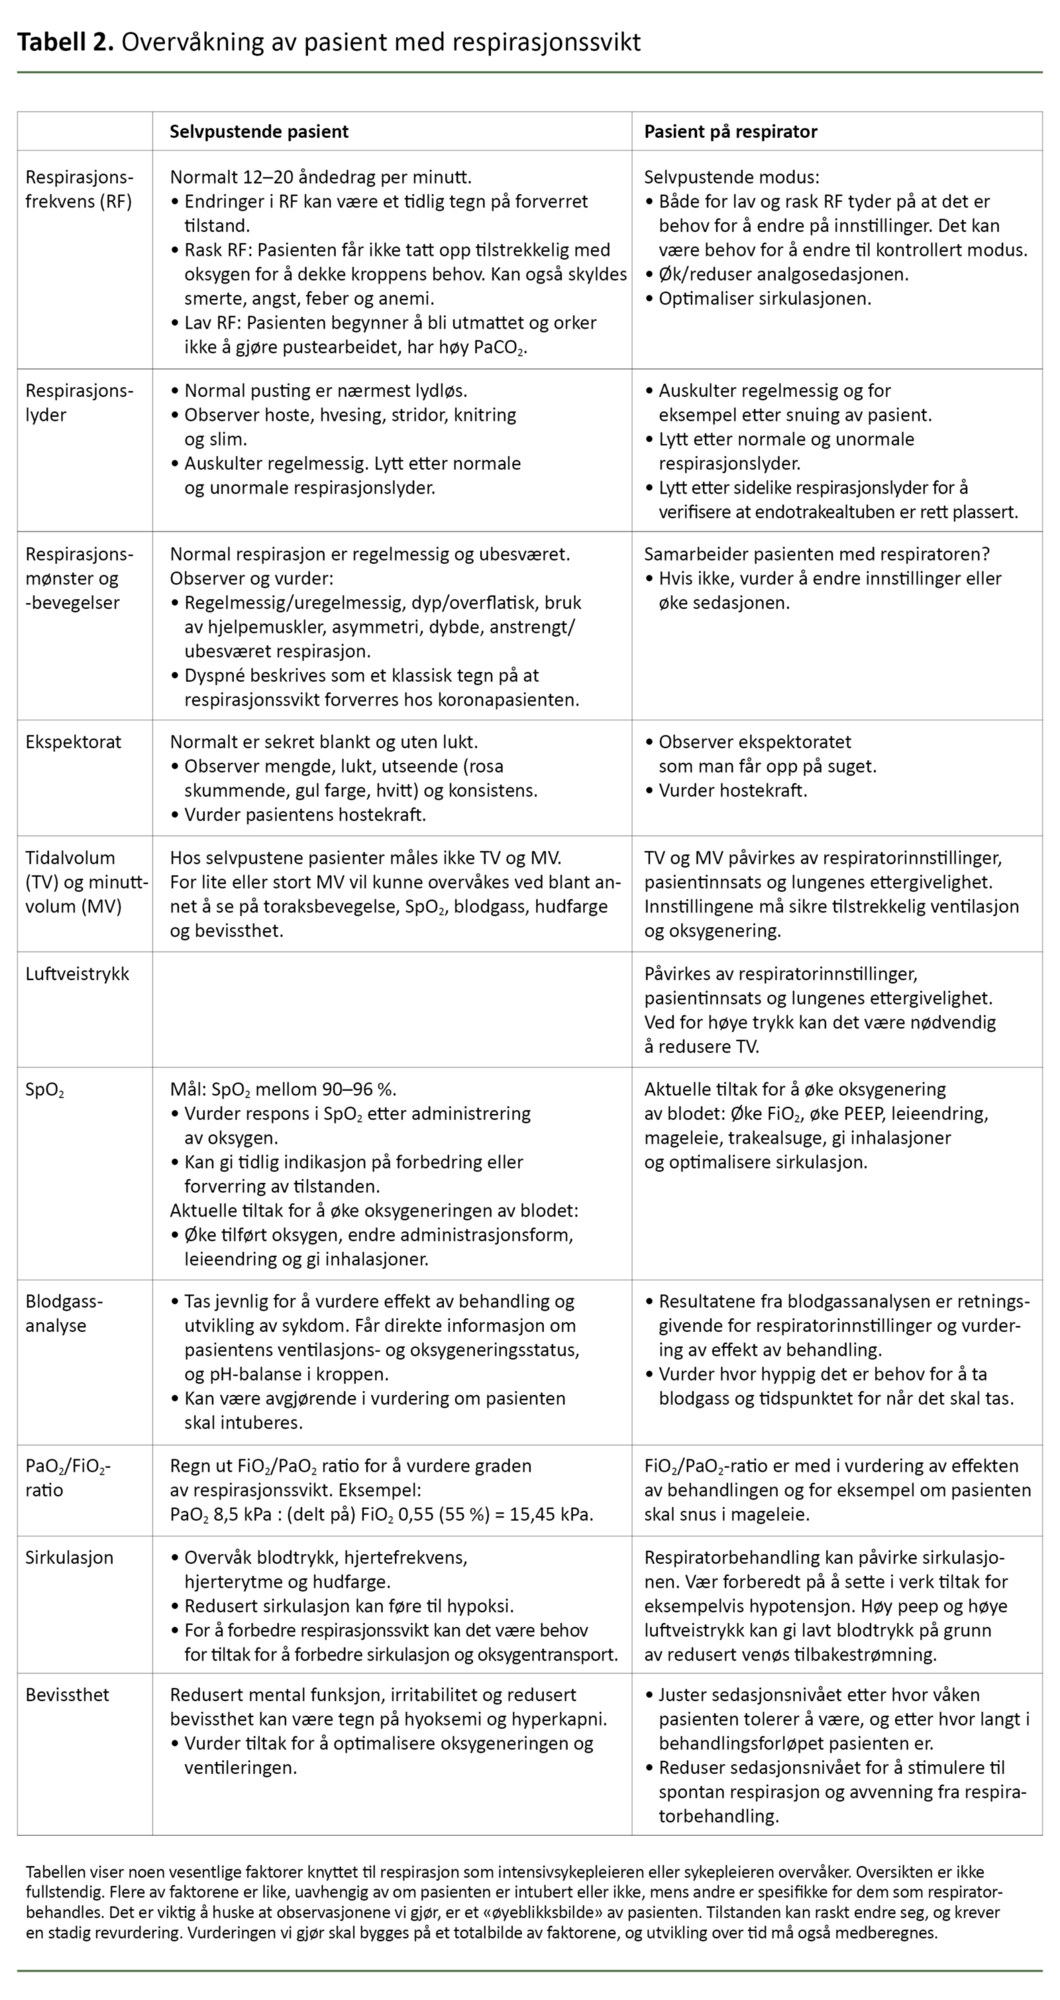 Tabell 2. Overvåkning av pasient med respirasjonssvikt